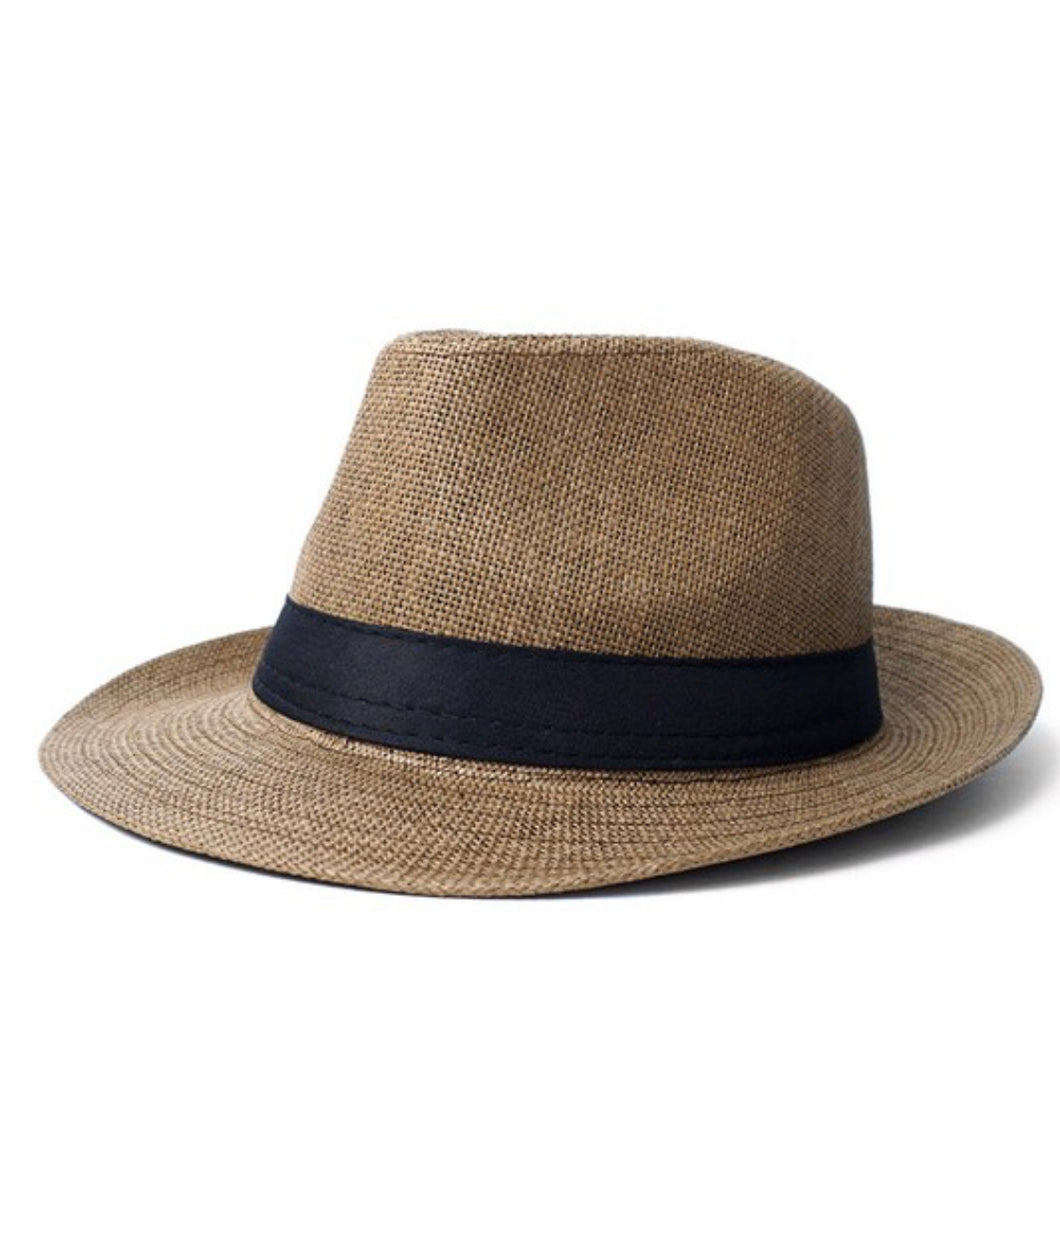 Mens Panama Hat - Brown